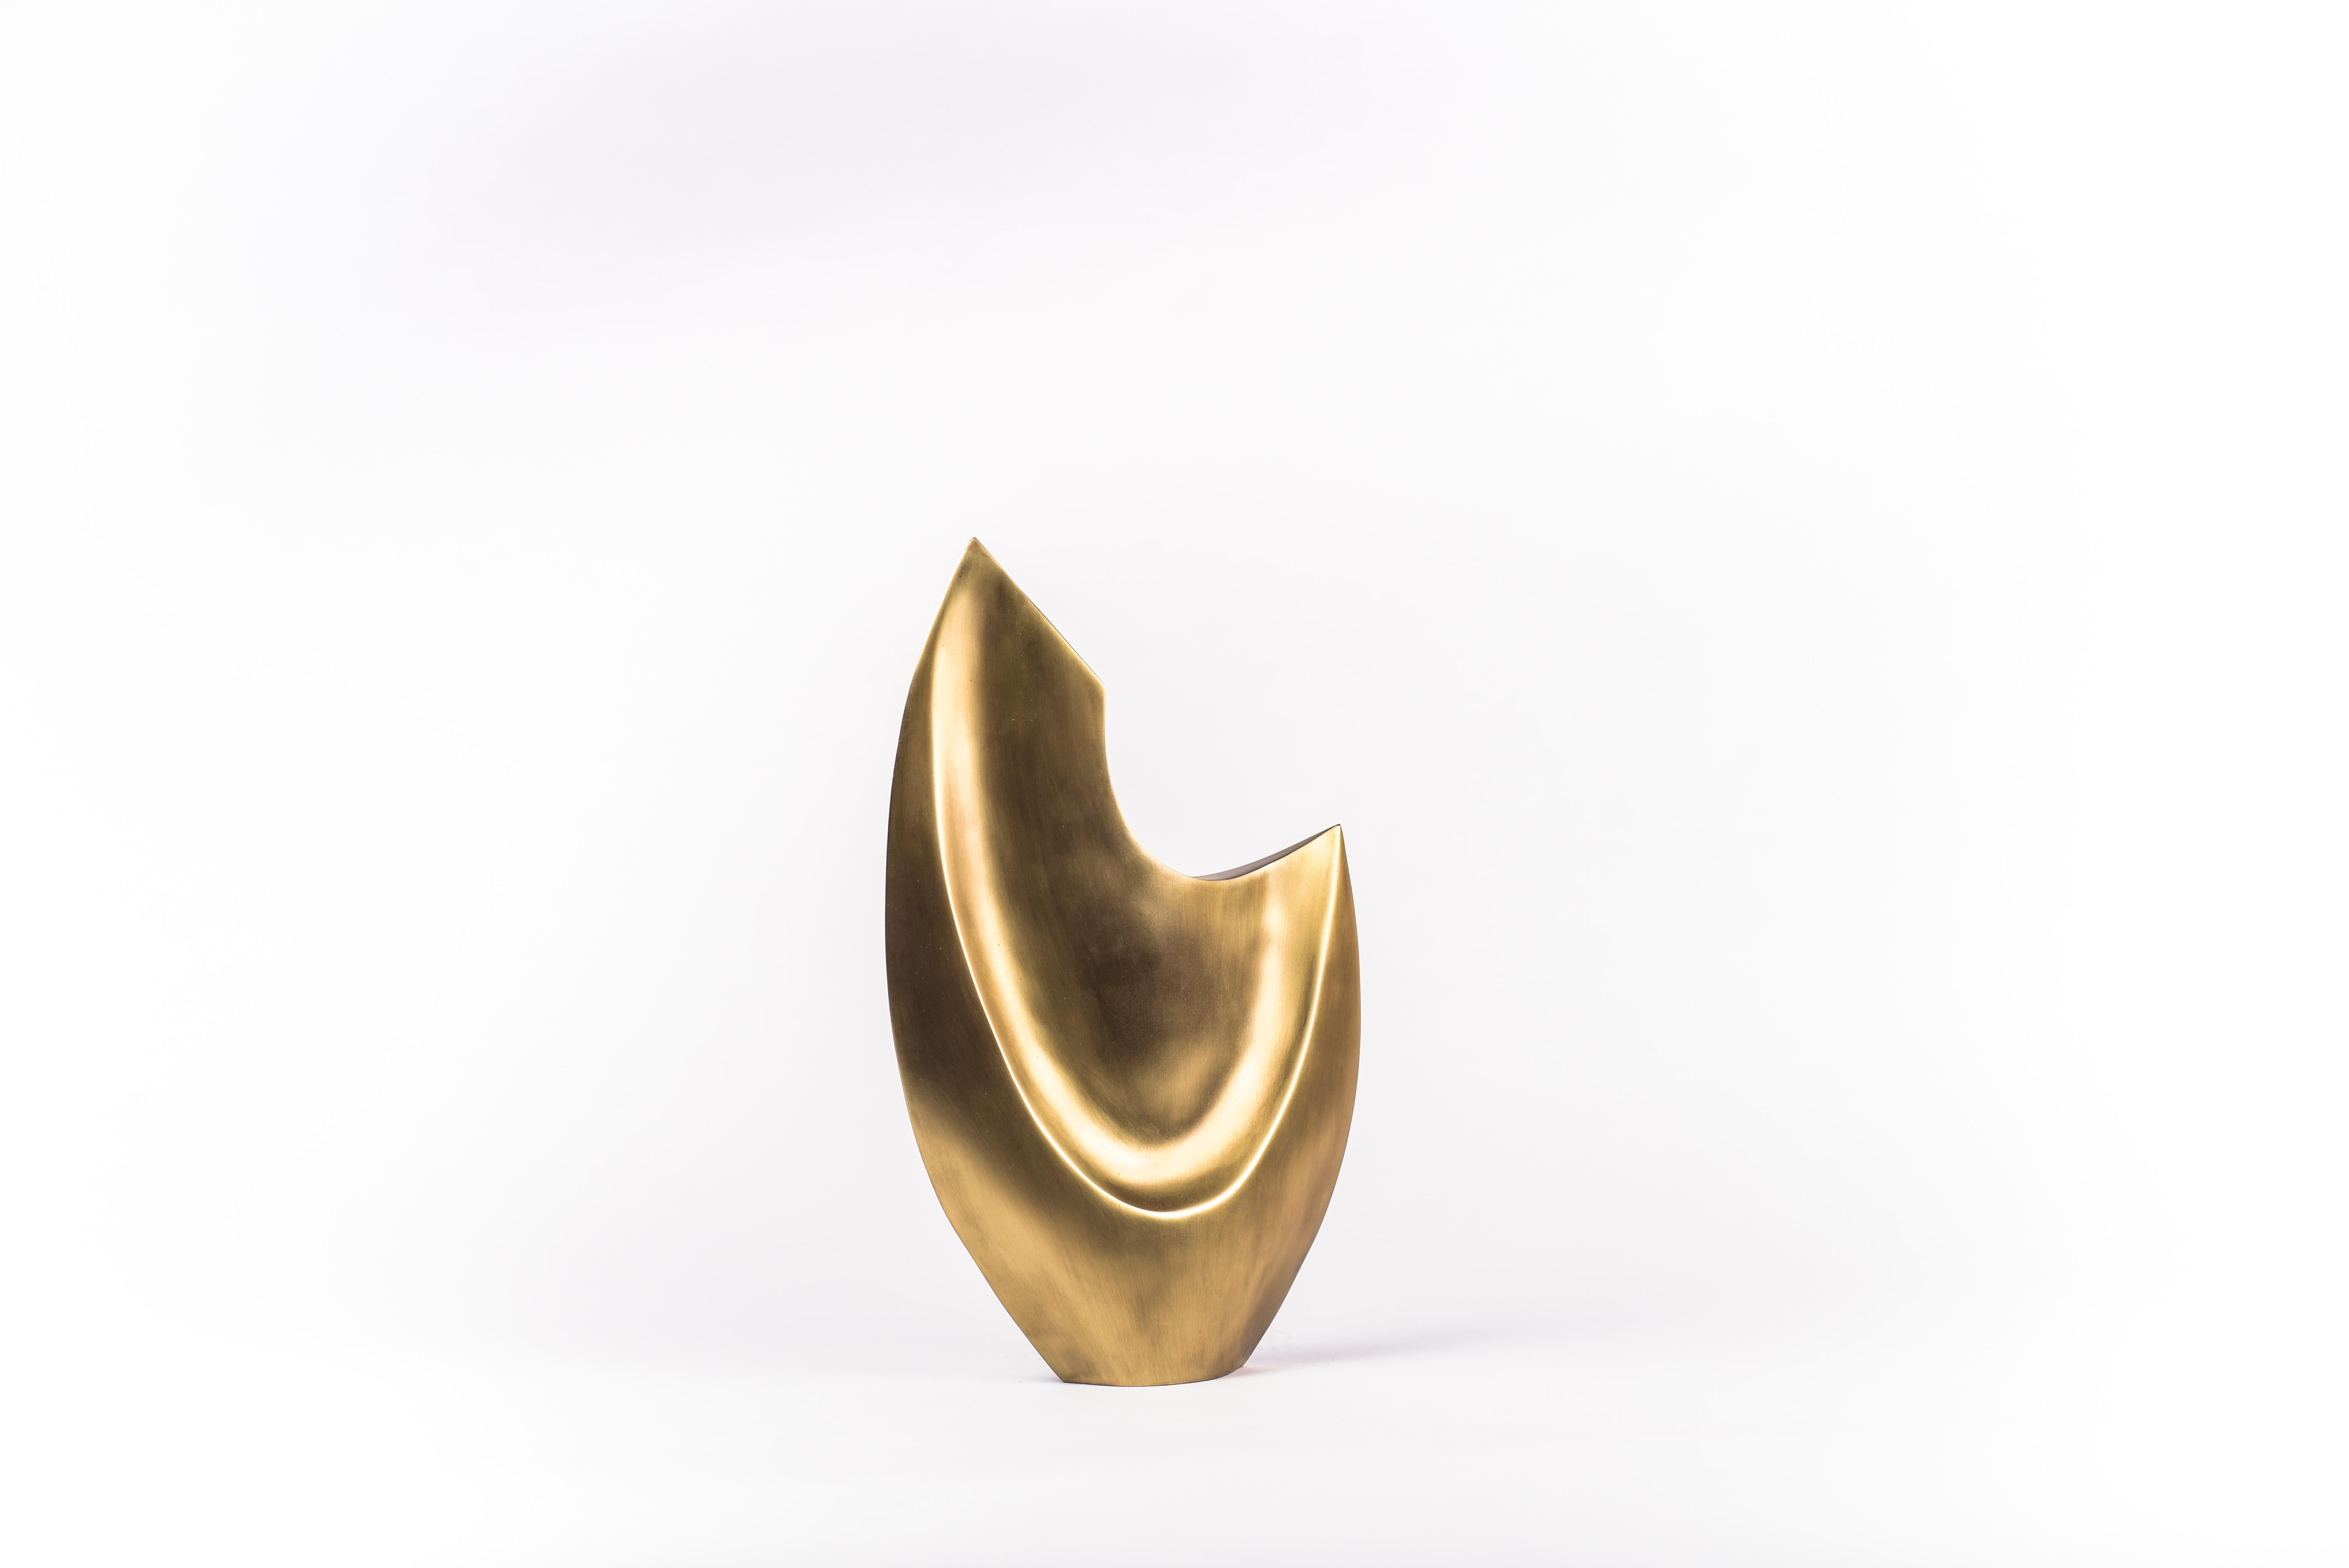 Patrick Coard Paris bringt eine einzigartige und wunderschöne Kollektion von Skulpturen auf den Markt. Die Oval Queen ist geometrisch und schlank mit zarten, aber definierten Details. Das Stück ist komplett handgefertigt aus Bronze-Patina-Messing.